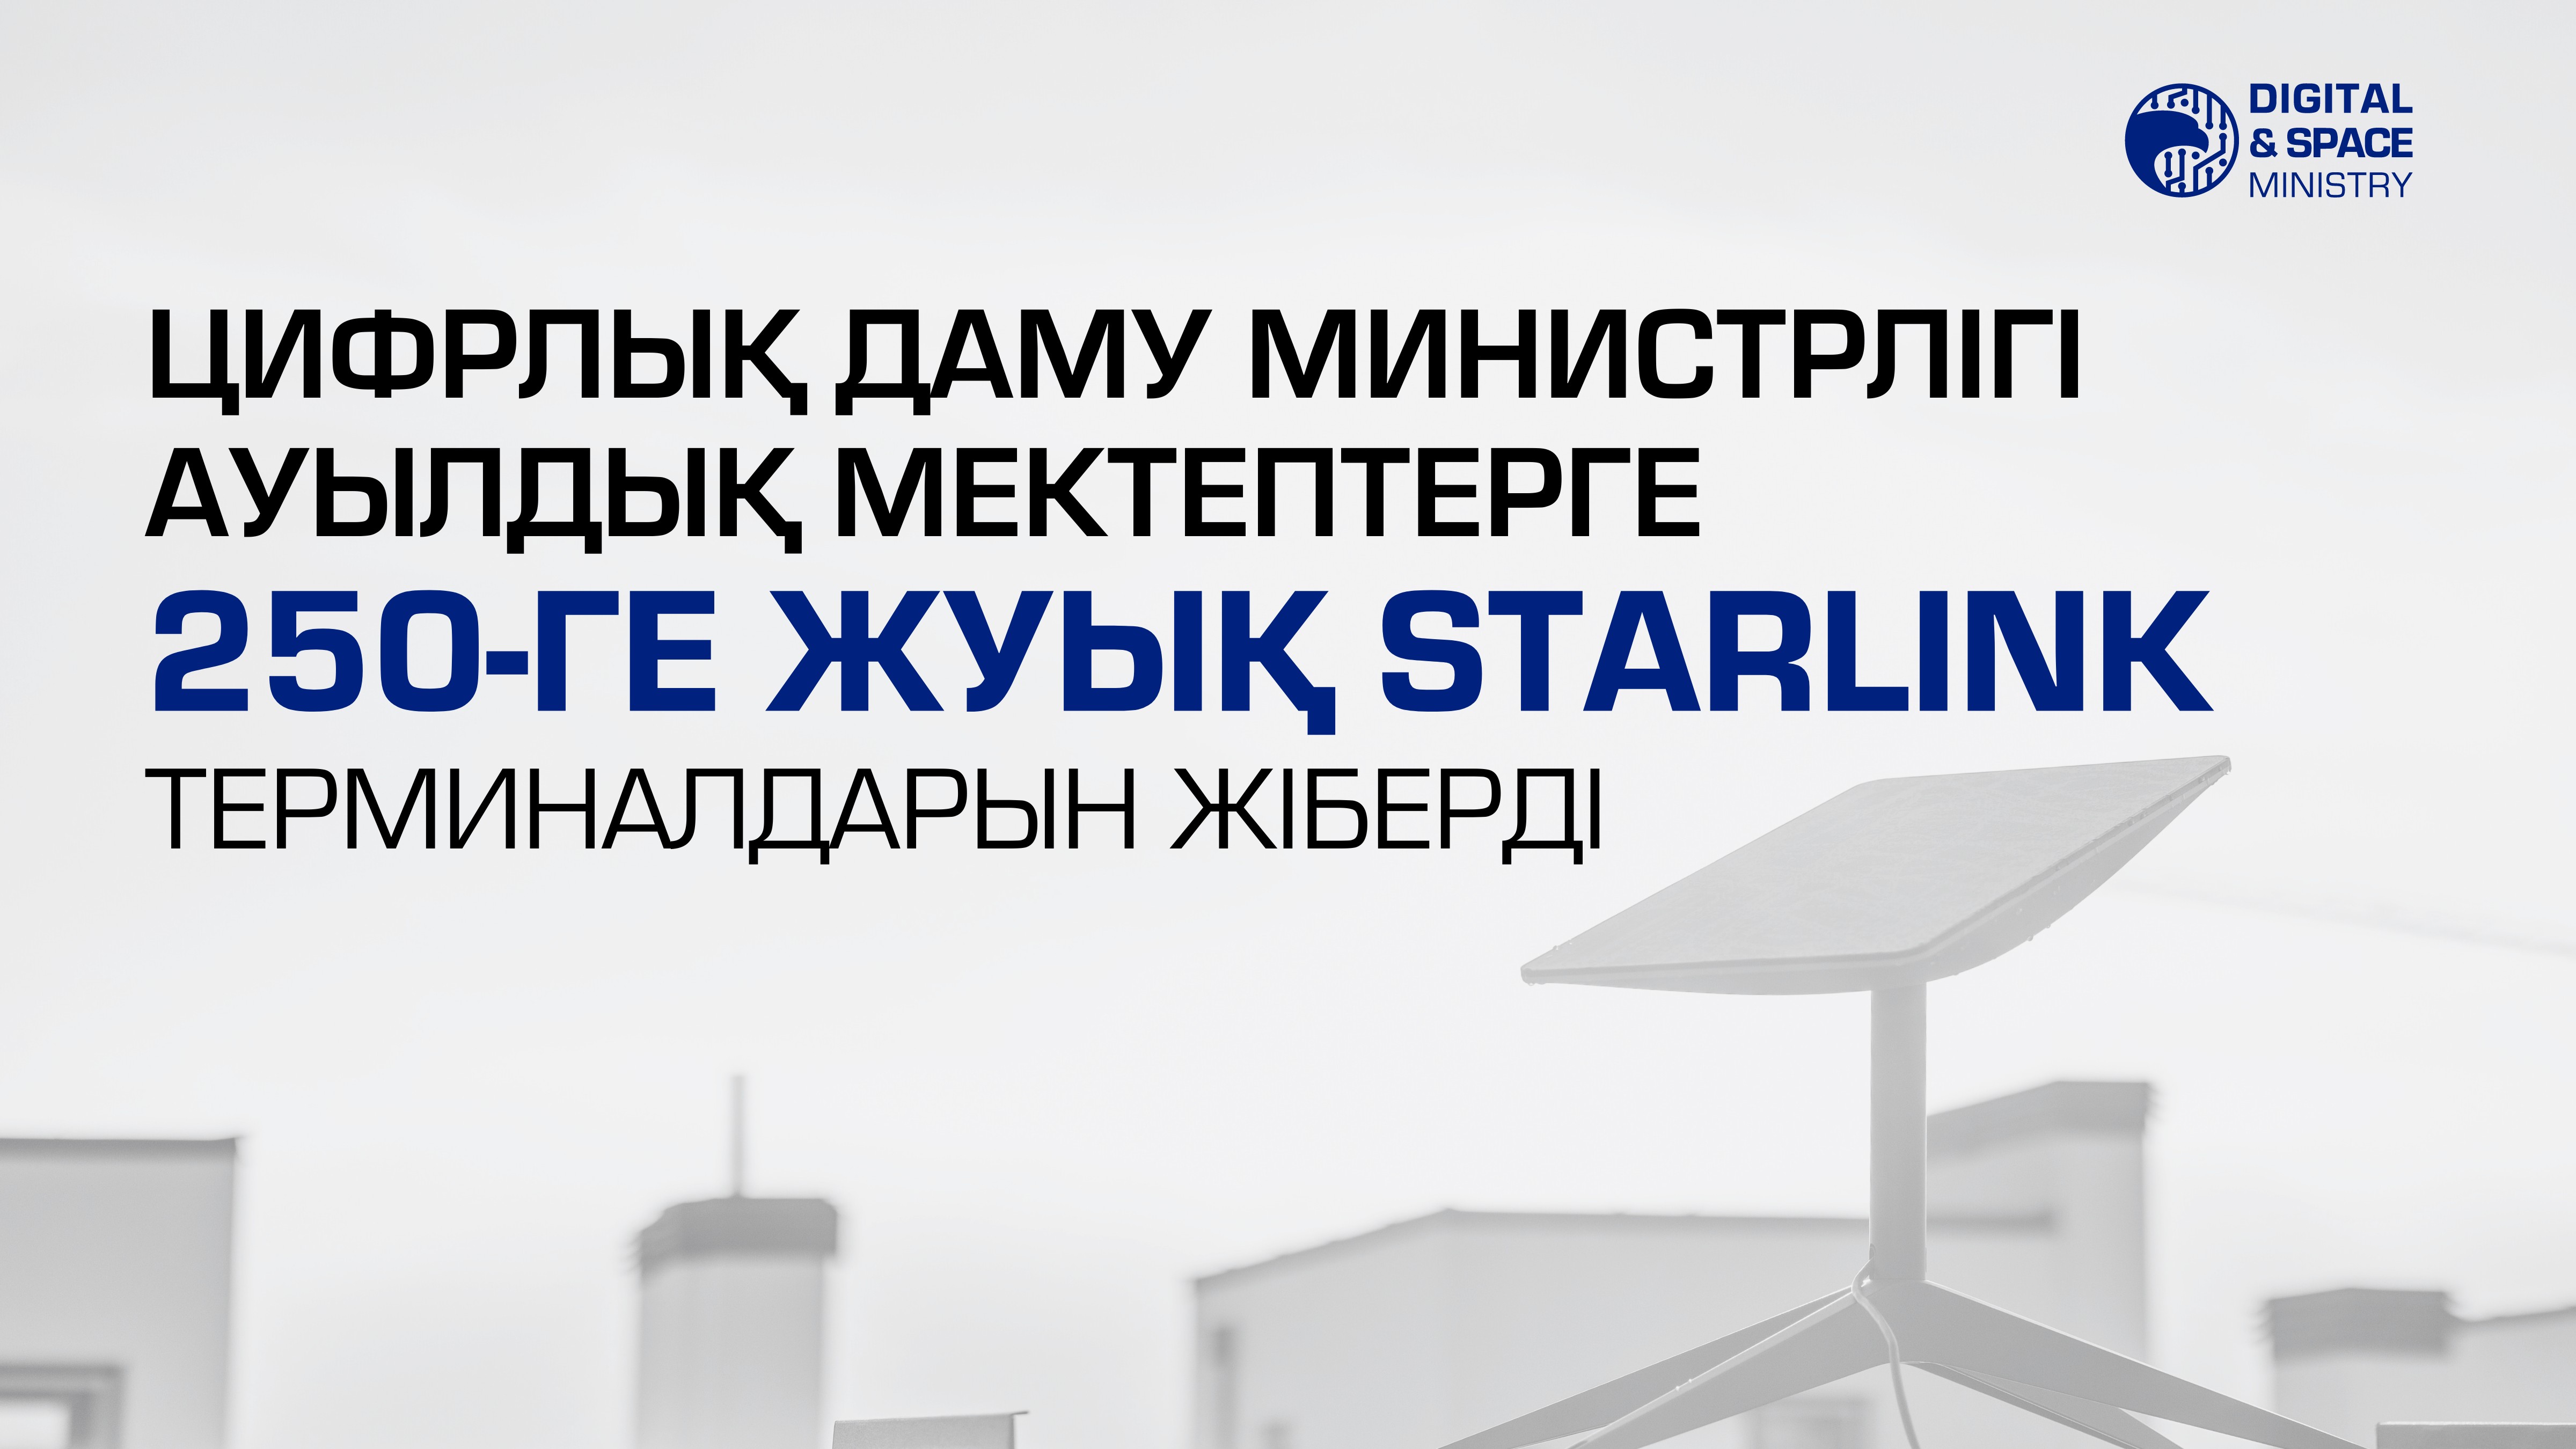 Цифрлық даму министрлігі ауылдық мектептерге 250-ге жуық Starlink терминалдарын жіберді